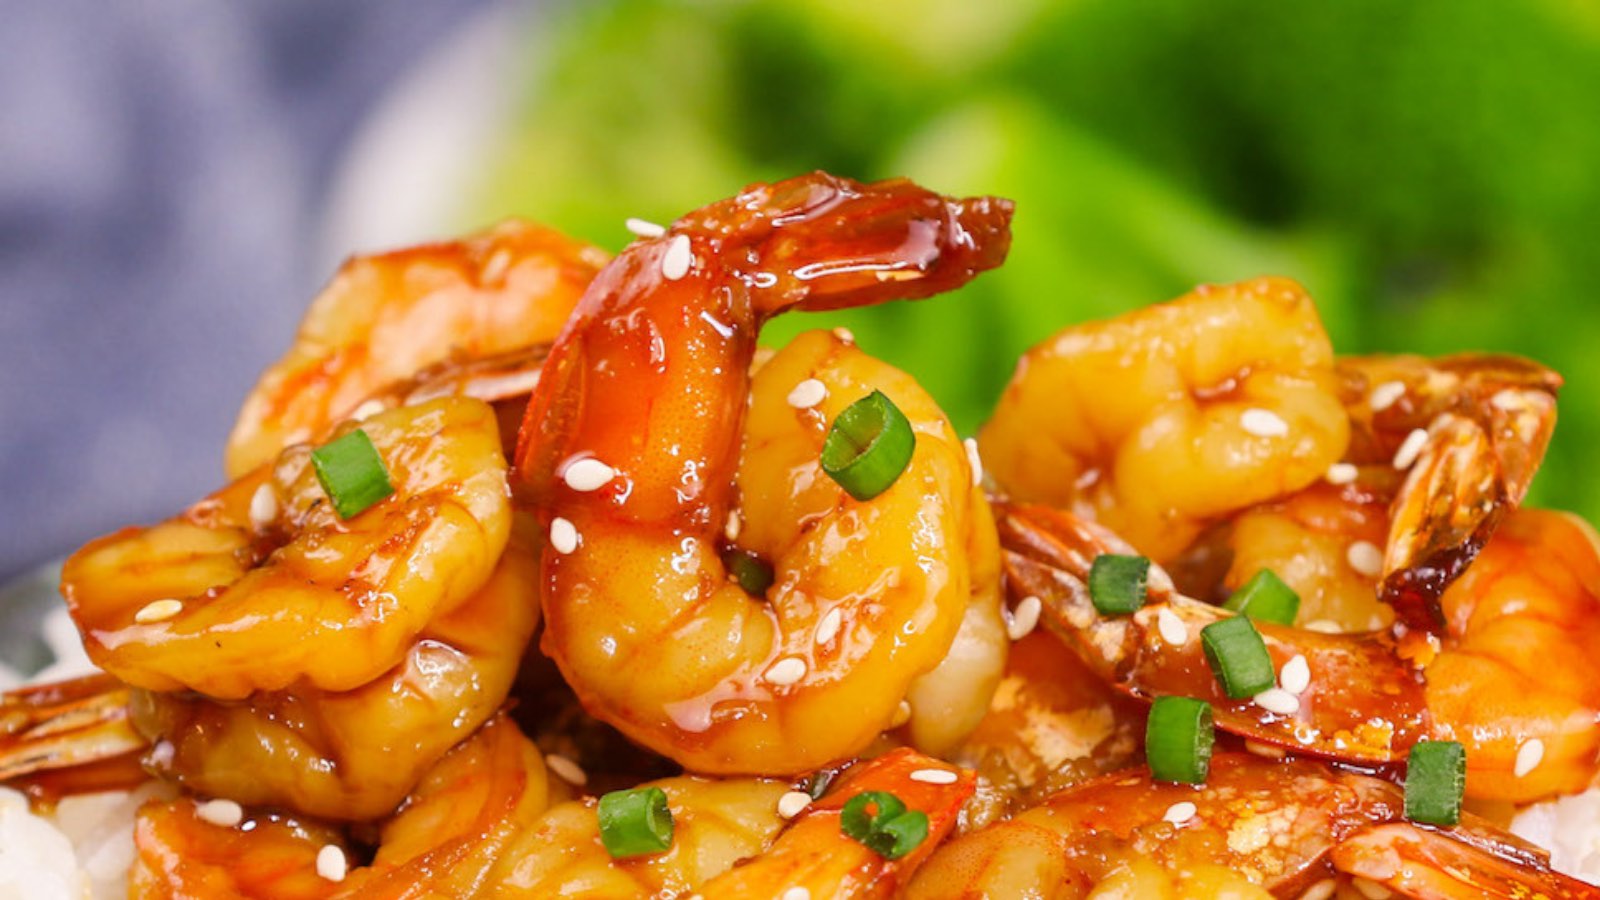 How to Cook Frozen Shrimp (Easy Methods For Frozen Shrimp) - IzzyCooking